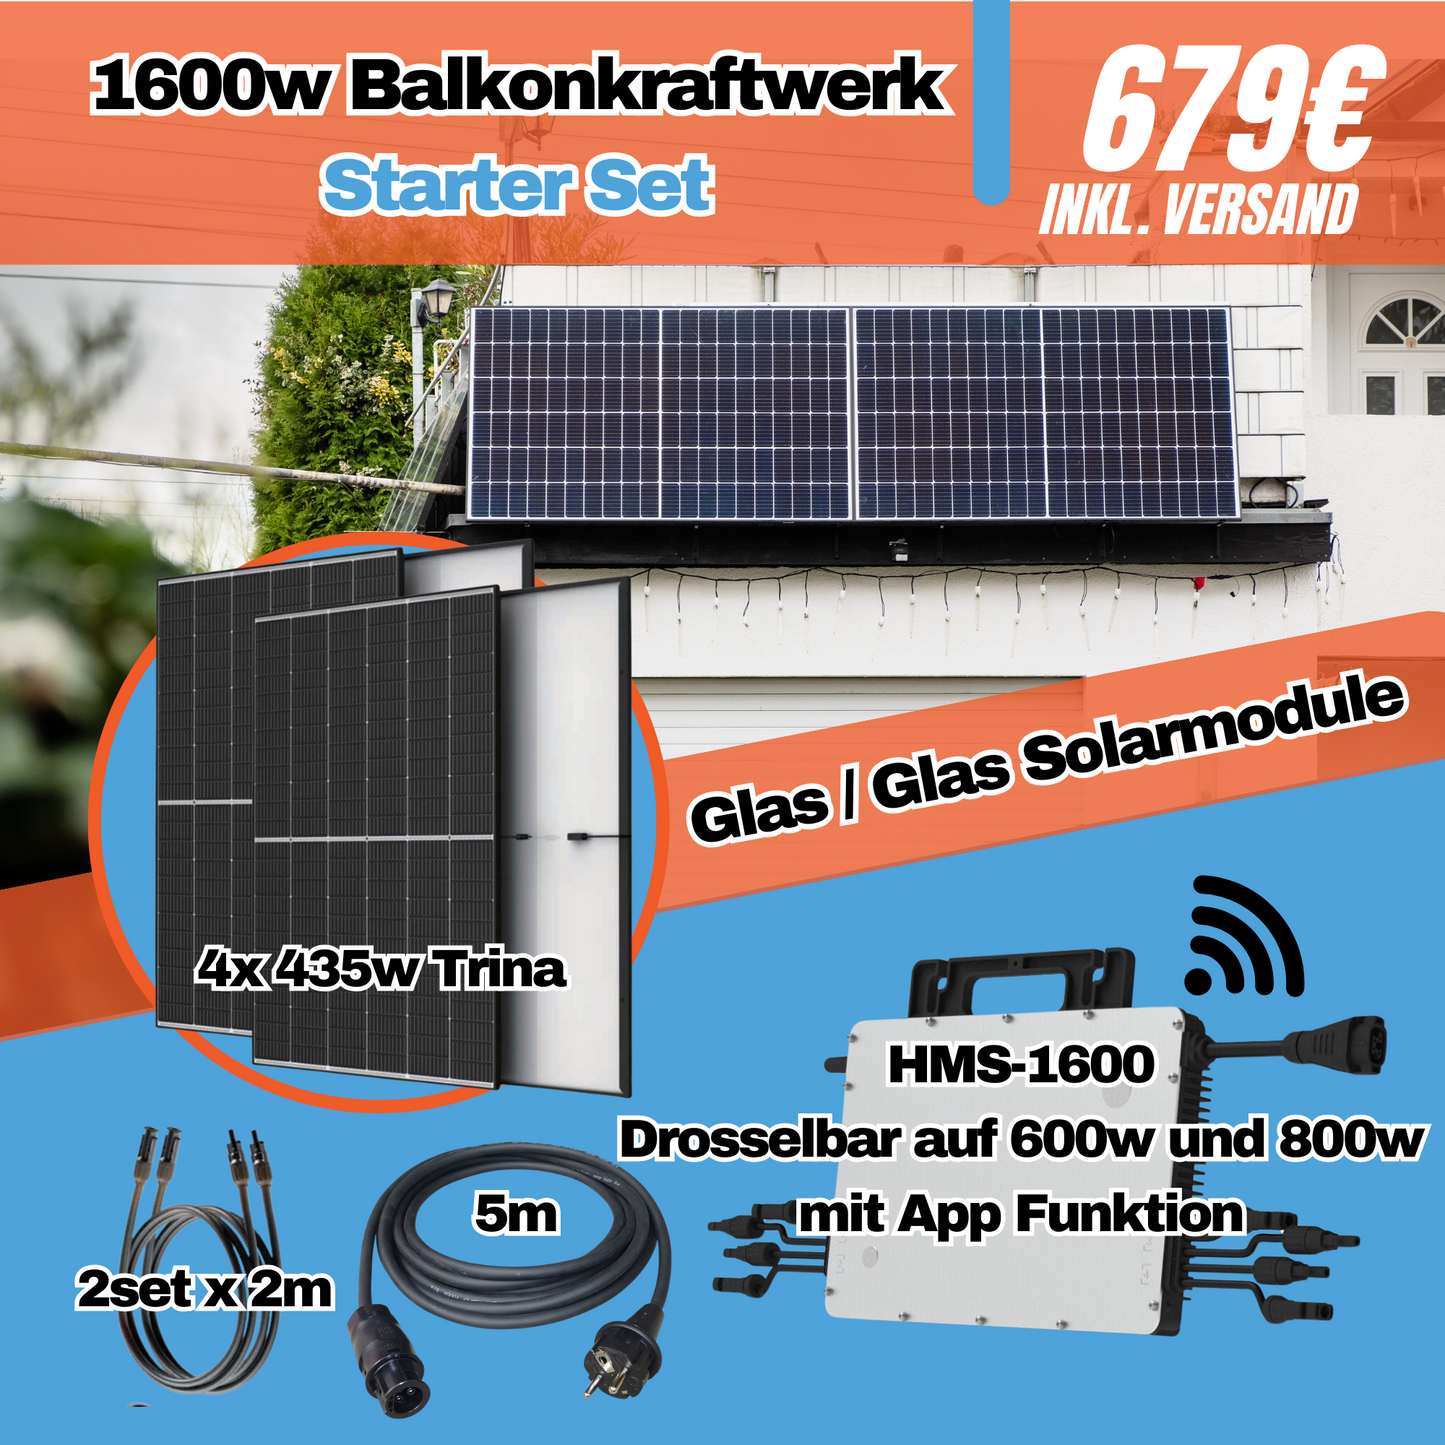 Balkonkraftwerk 1600w/1740w WiFi SOLAR ANLAGE Trina Glas/Glas